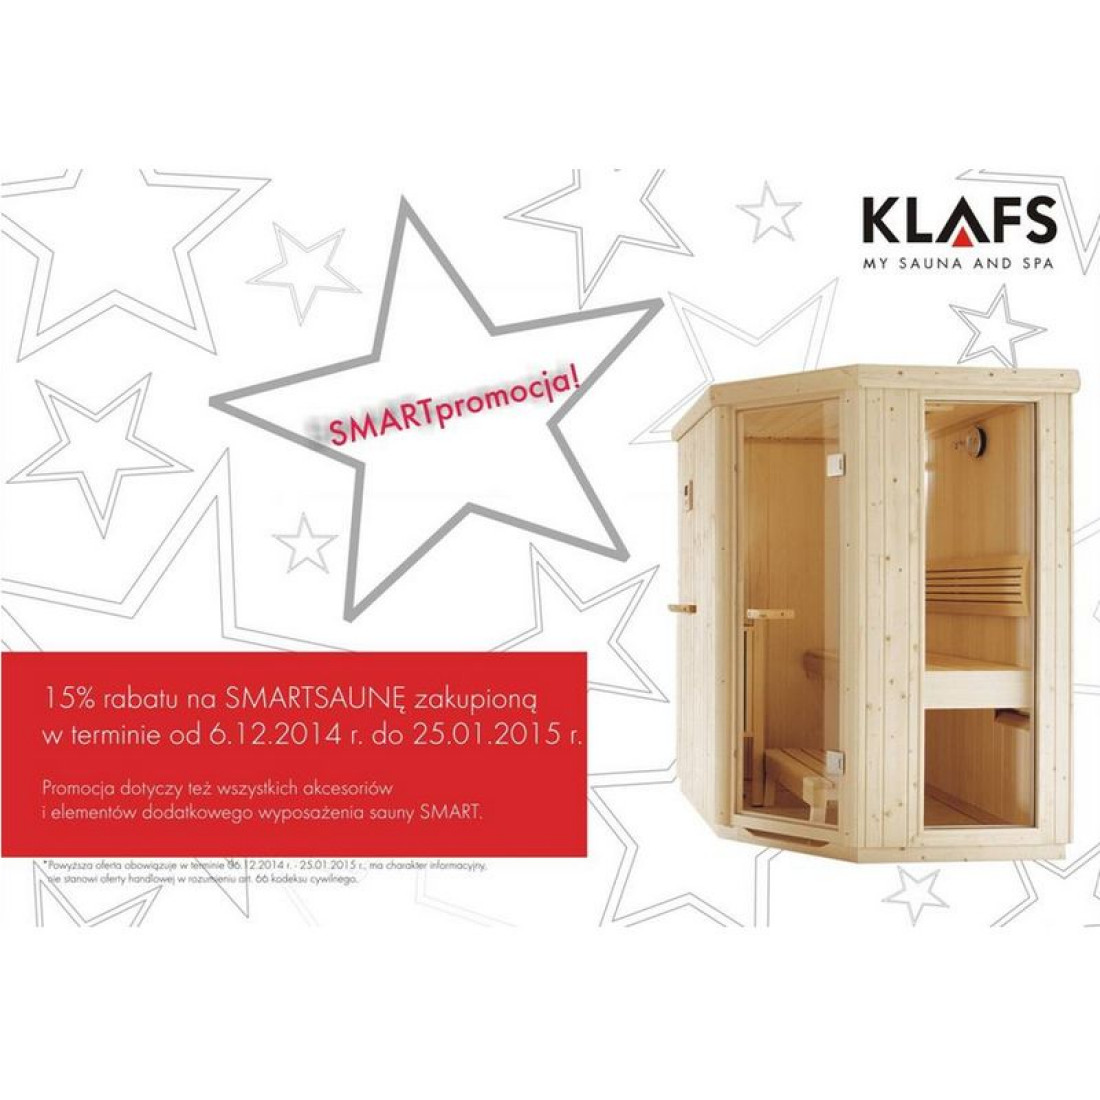 Promocja firmy Klafs na saunę SMART trwa do 25.01.2015 r.